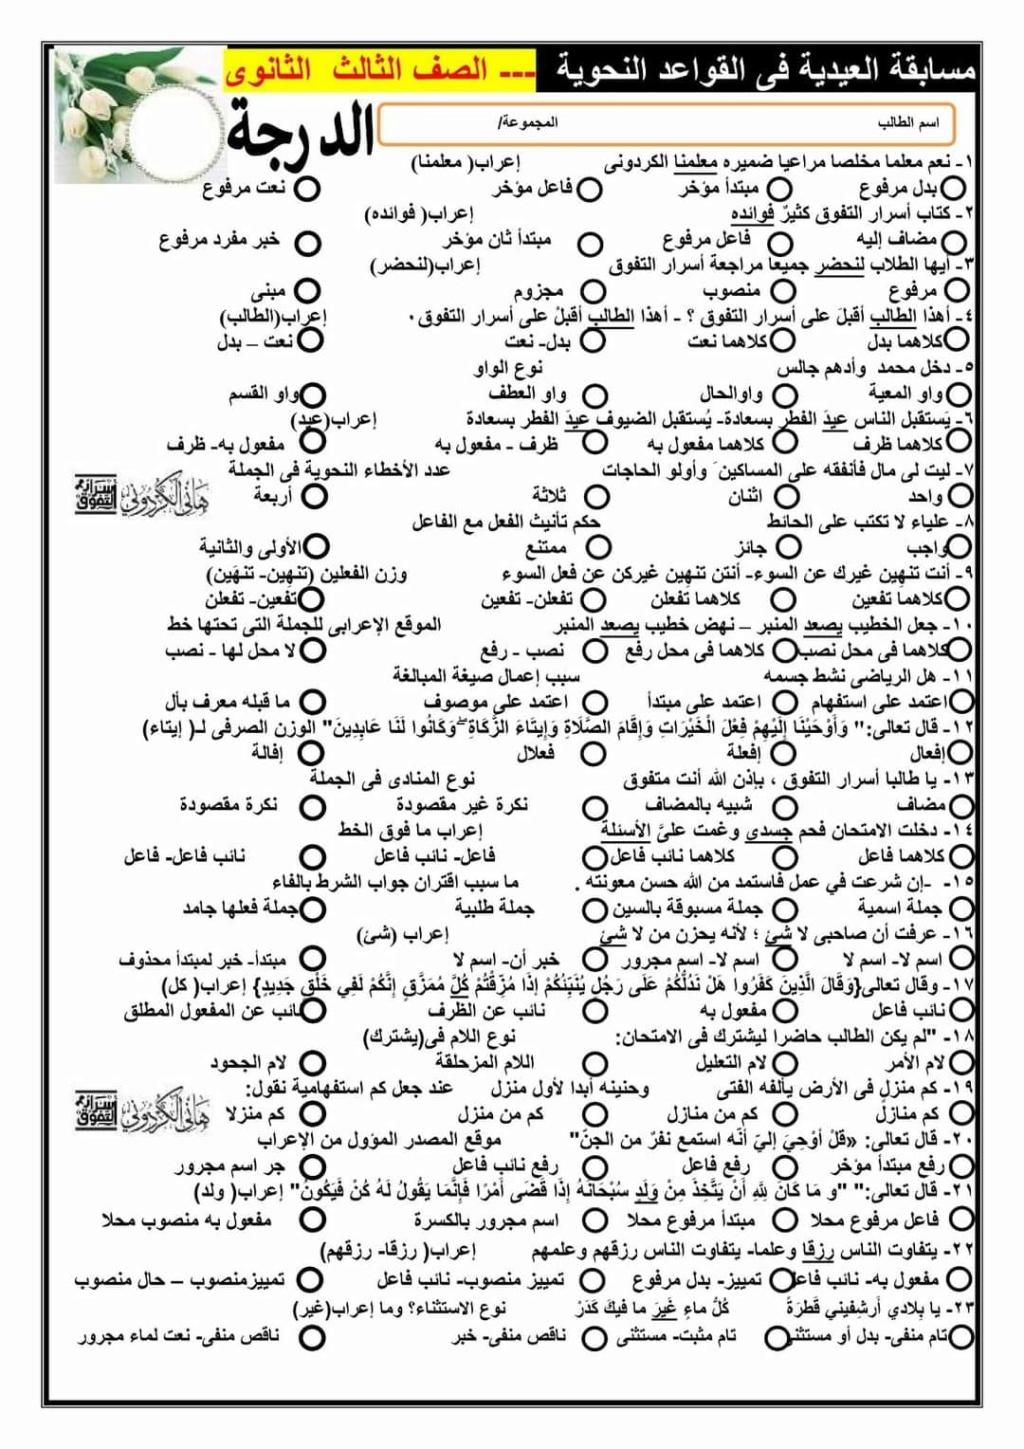 مراجعة ليلة الامتحان النحو بالإجابات للثانوية العامة 2022 أ/ هاني الكردوني 1109